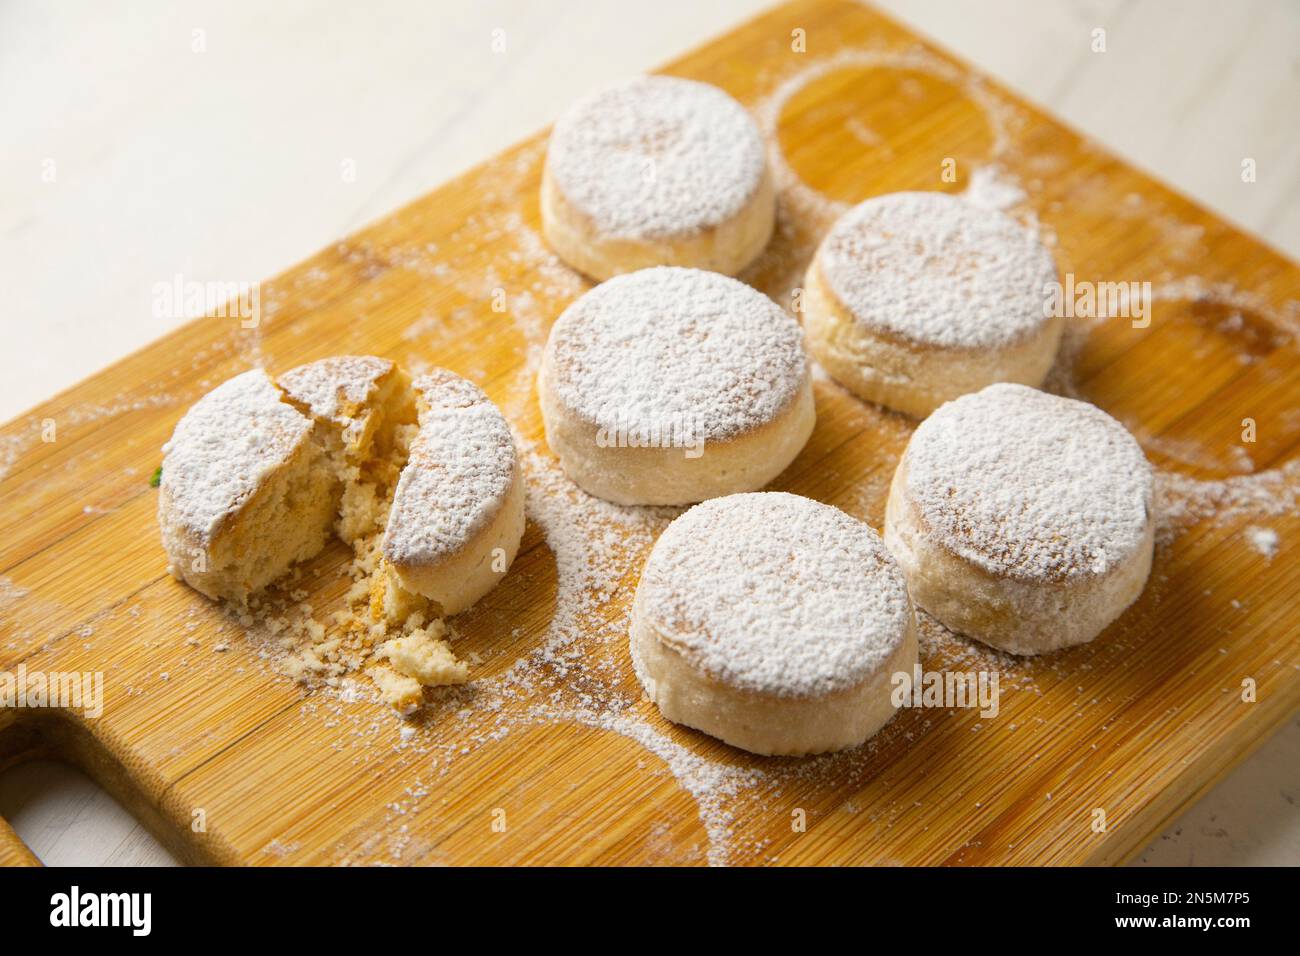 Shortbread di Manchego. I mantecados di Manchego sono un dolce zuccherato con una deliziosa texture flaky, tipica della pasticceria spagnola. Foto Stock